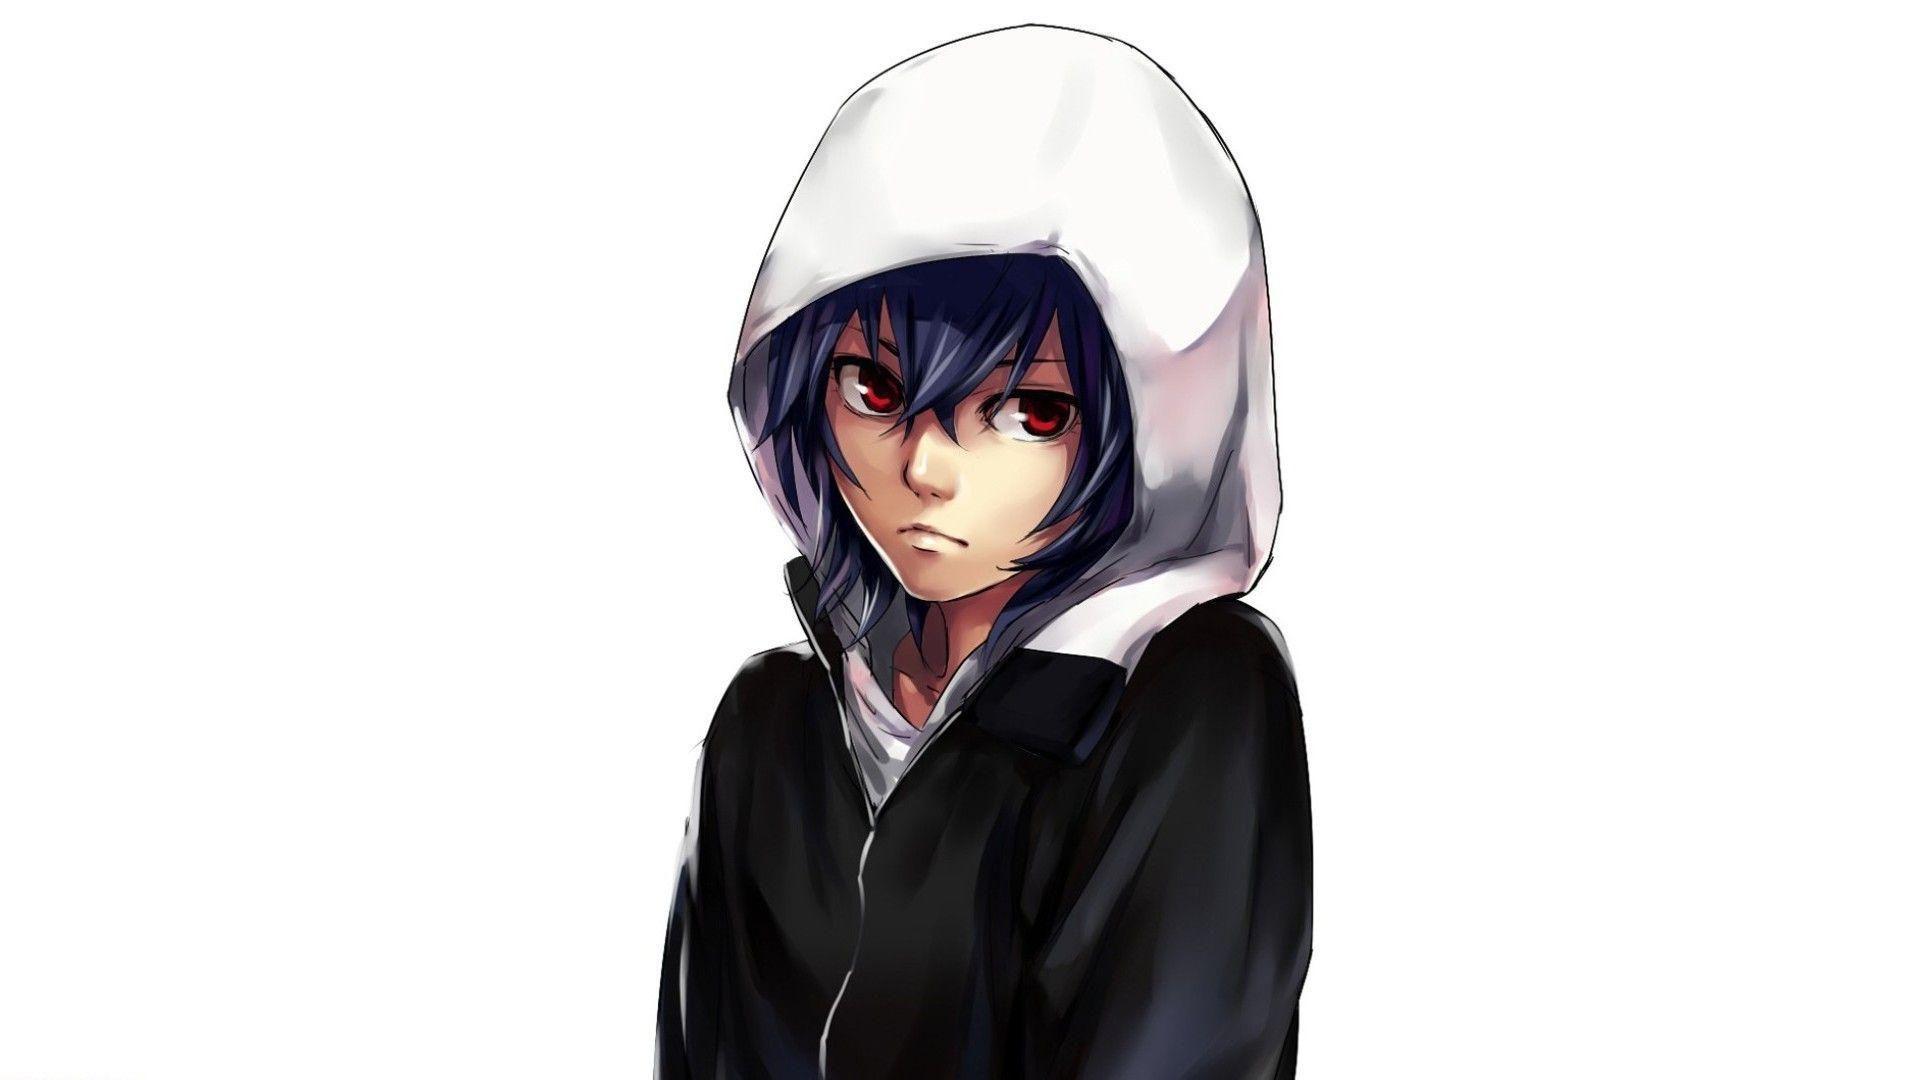 Girl wearing a hoodie HD desktop wallpaper, Widescreen, High